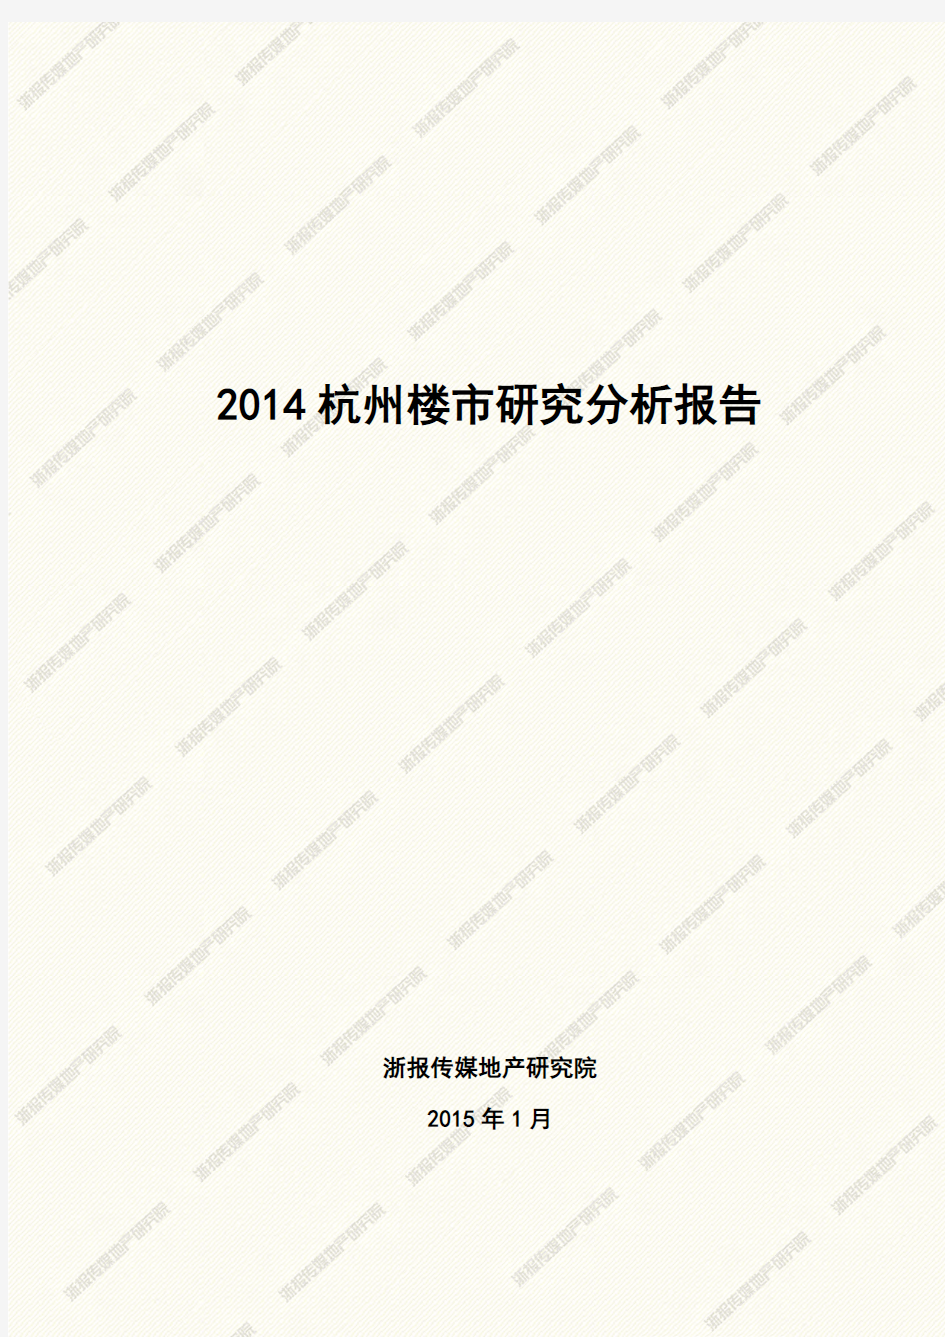 2014年杭州楼市研究分析报告